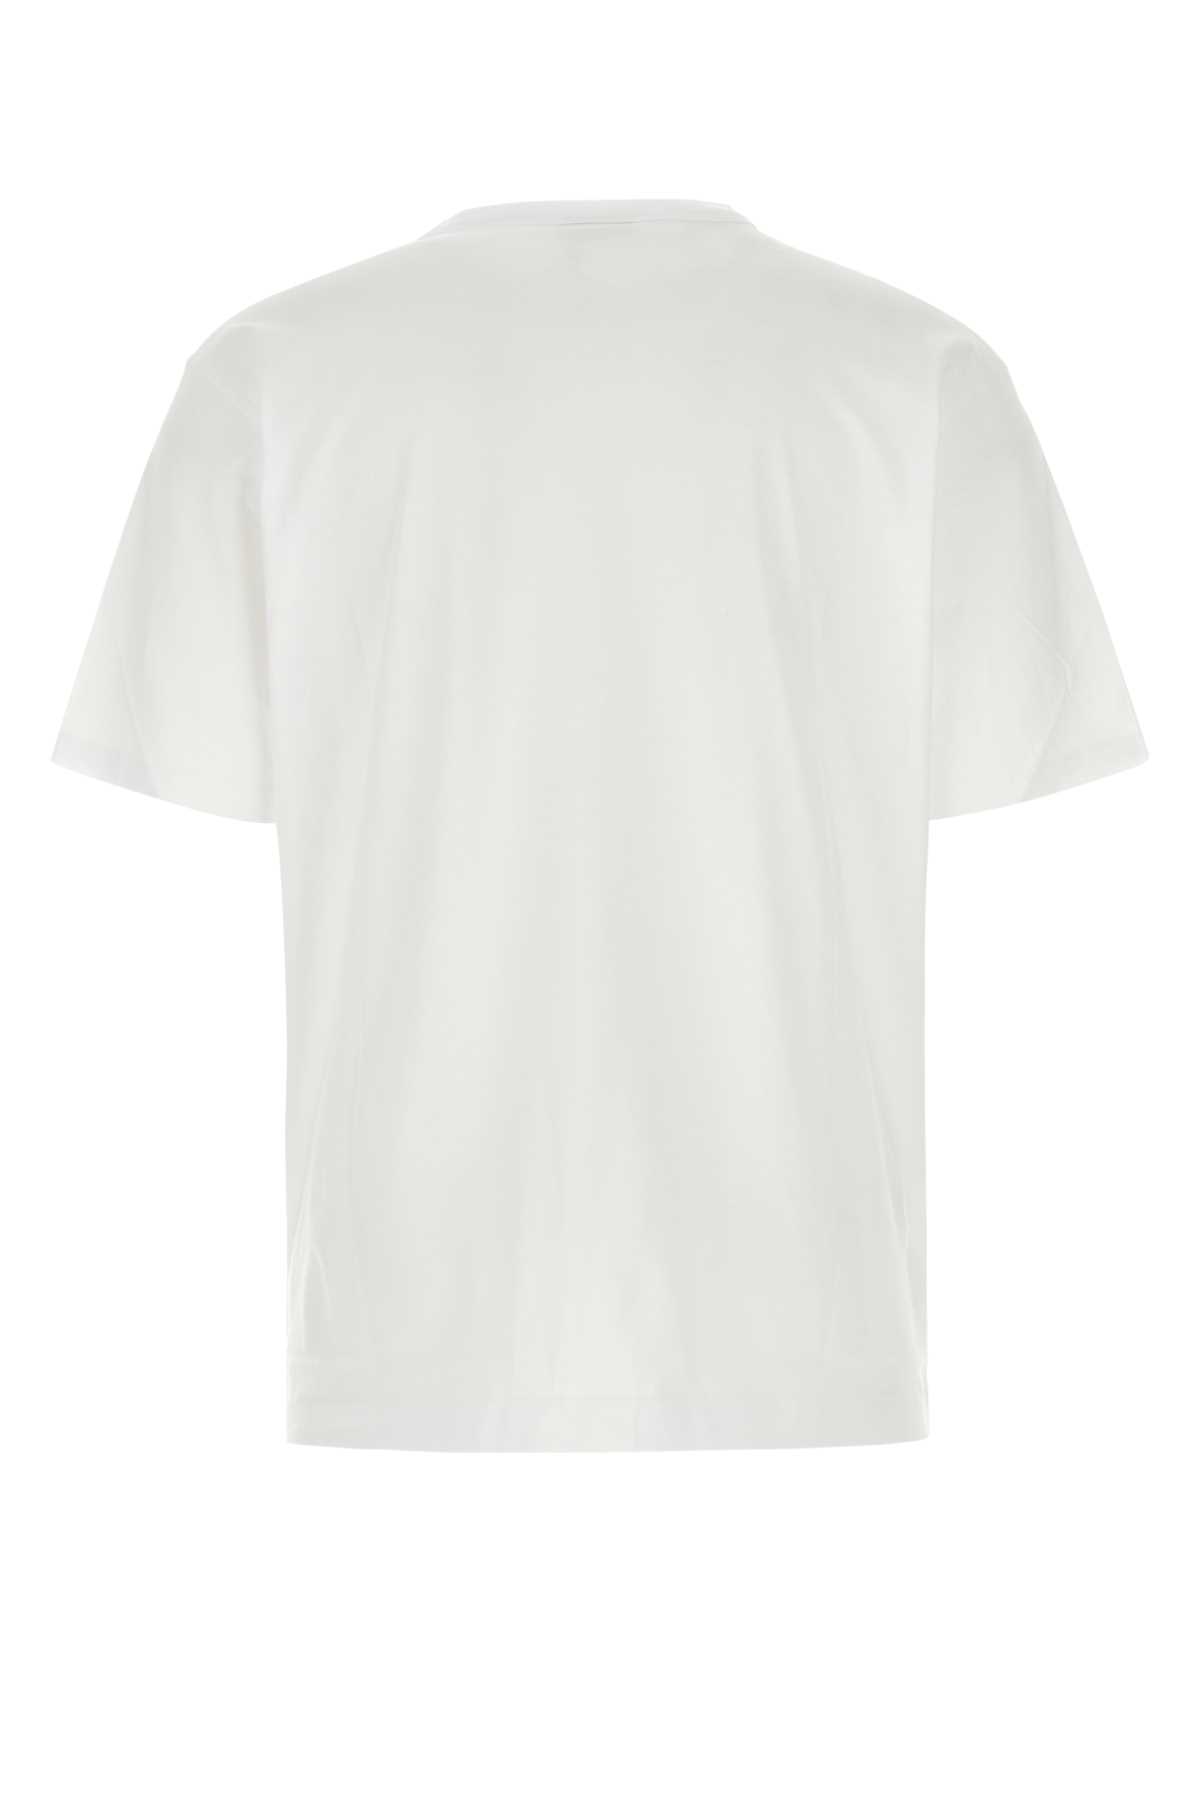 Shop Dries Van Noten White Cotton Heer T-shirt